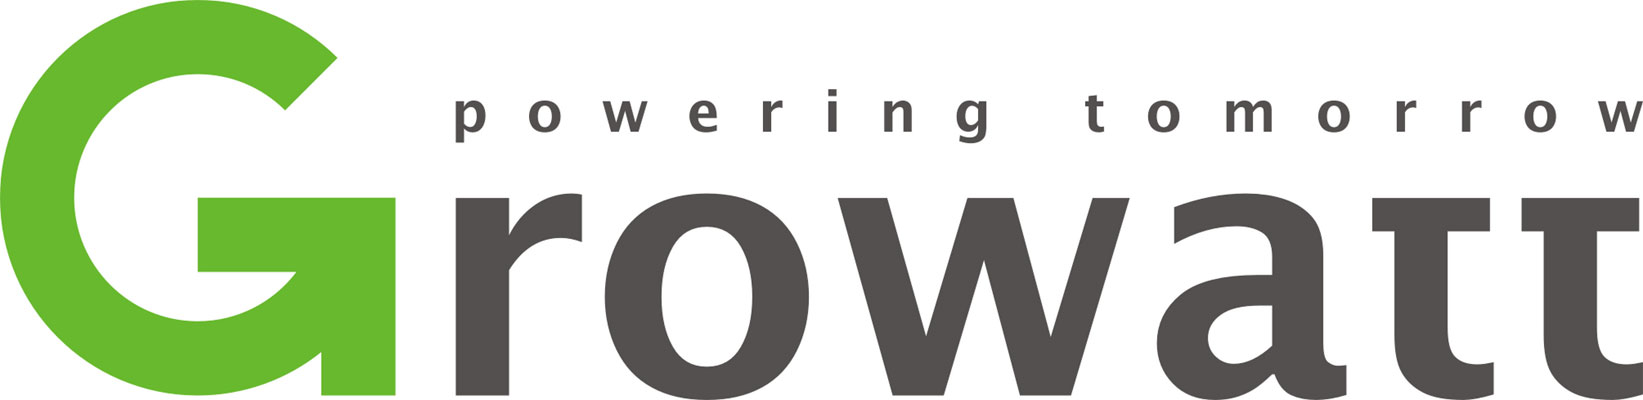 logo growatt